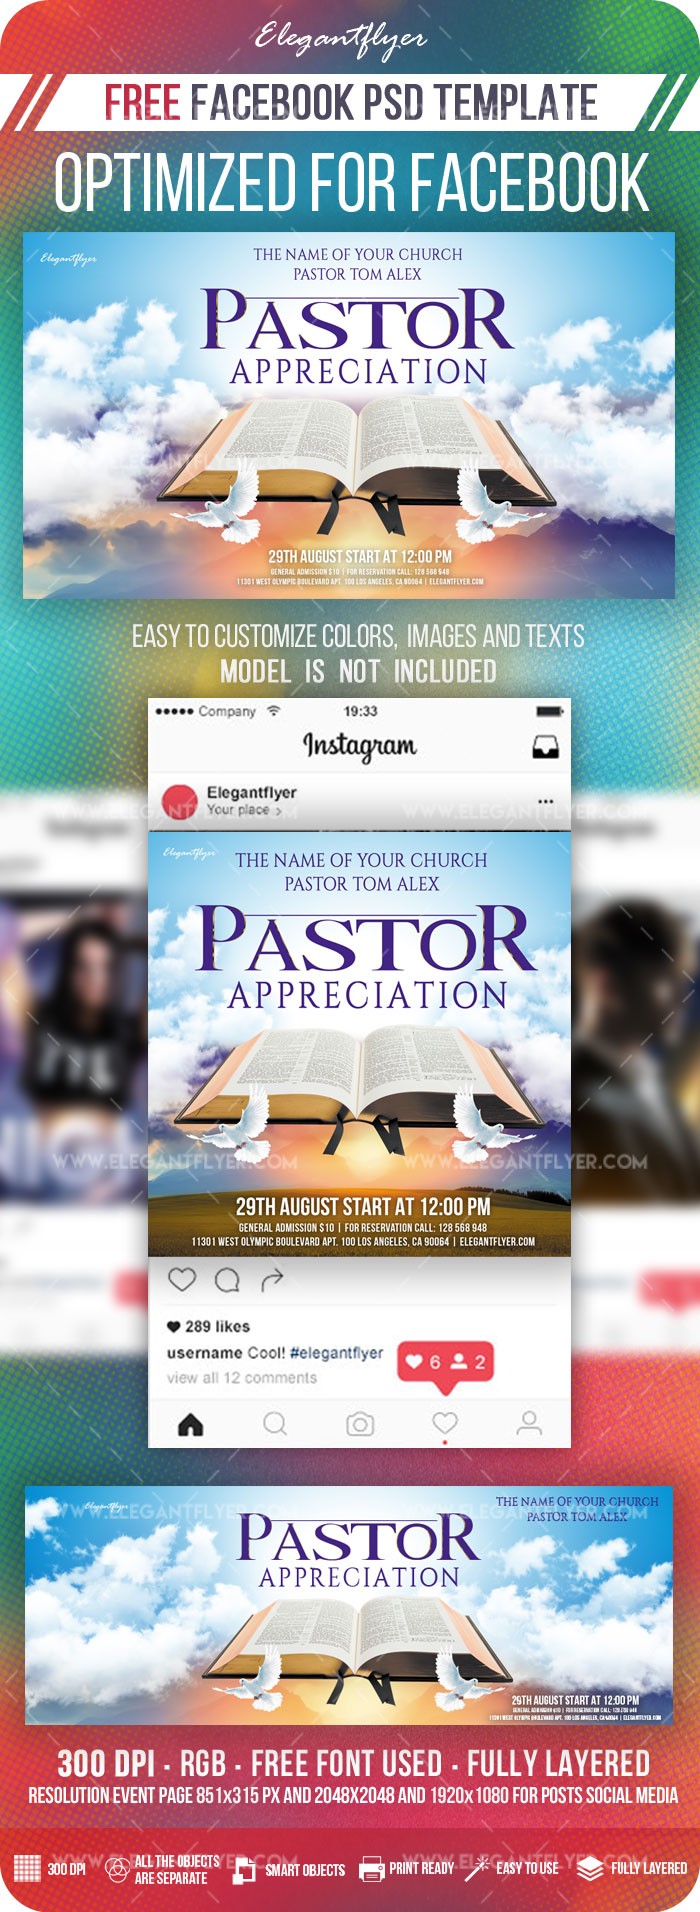 Pastor Appreciation Facebook by ElegantFlyer